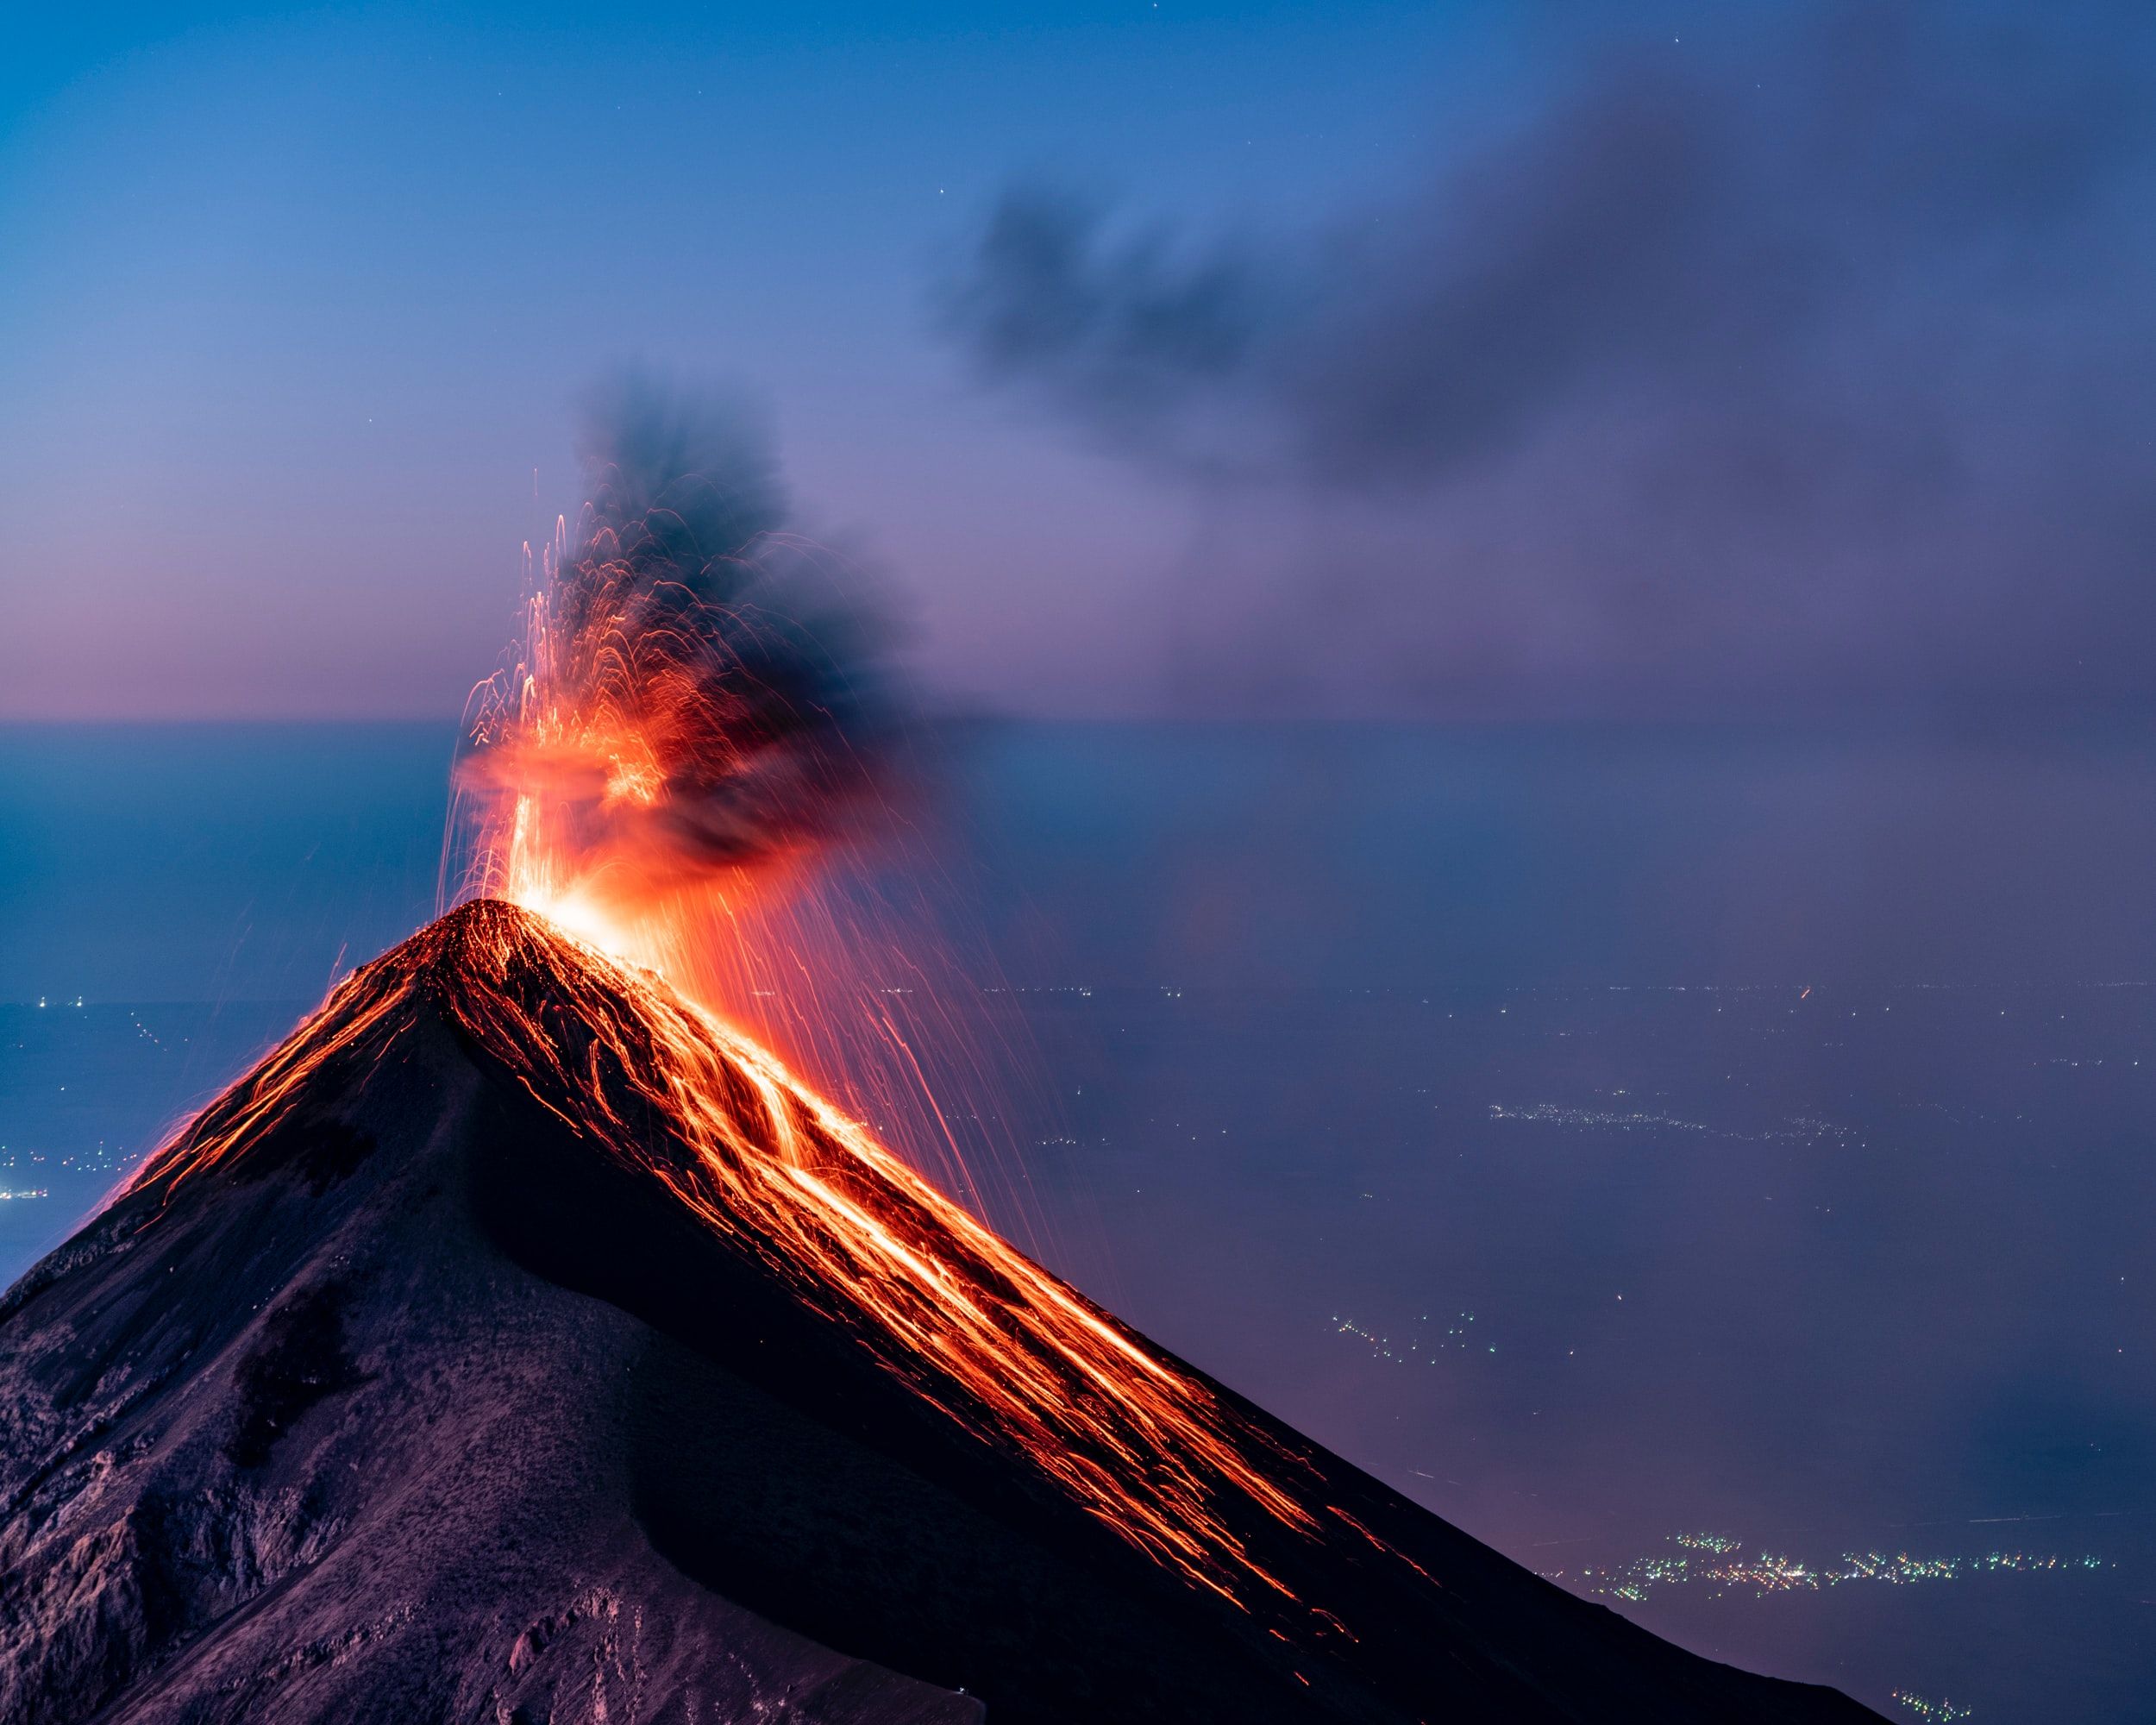 Volcan en erupcion